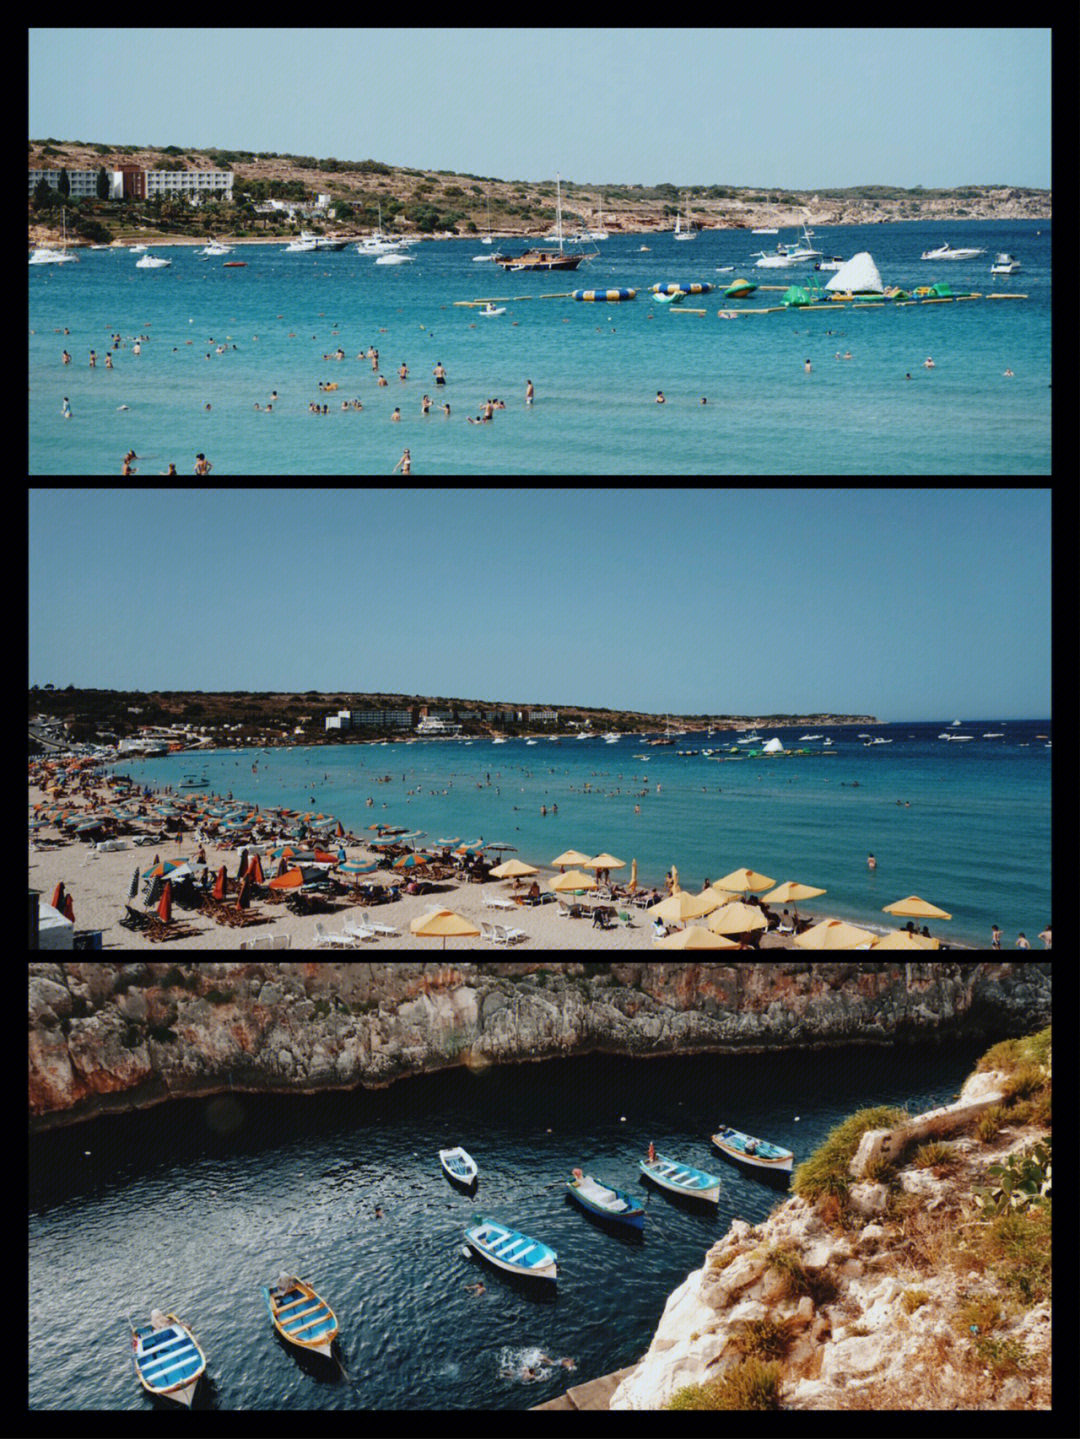 马耳他的视频真的好怀念2014暑假在小岛上暴晒的两个月那时候,蓝窗